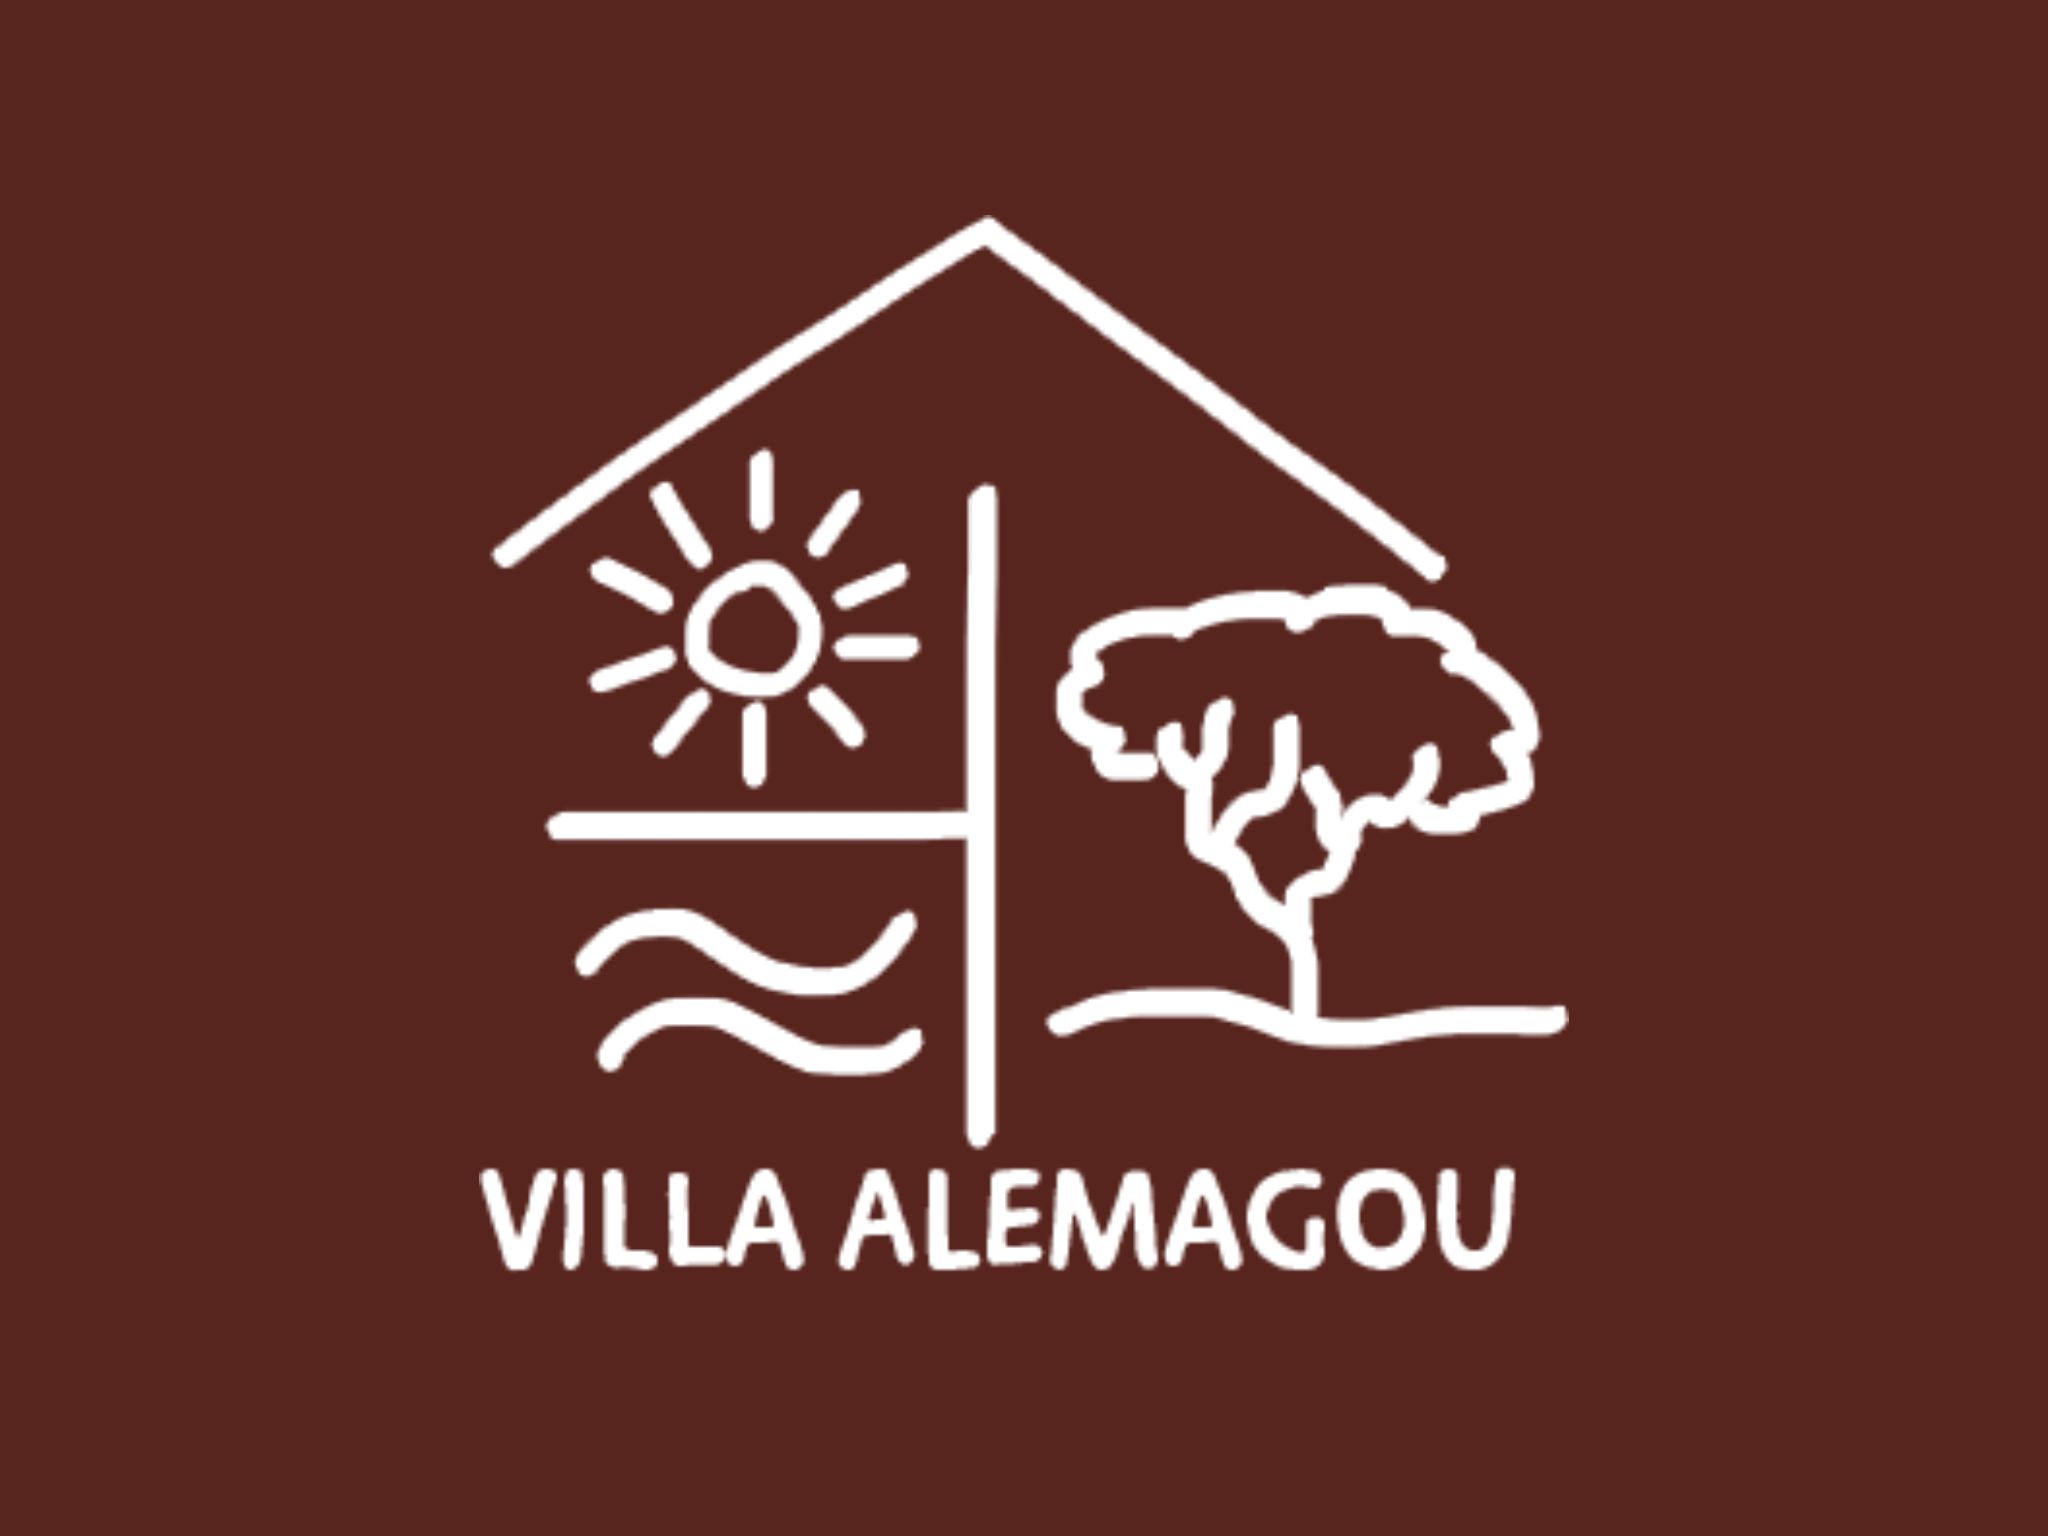  Logo Villa Alemagou 6